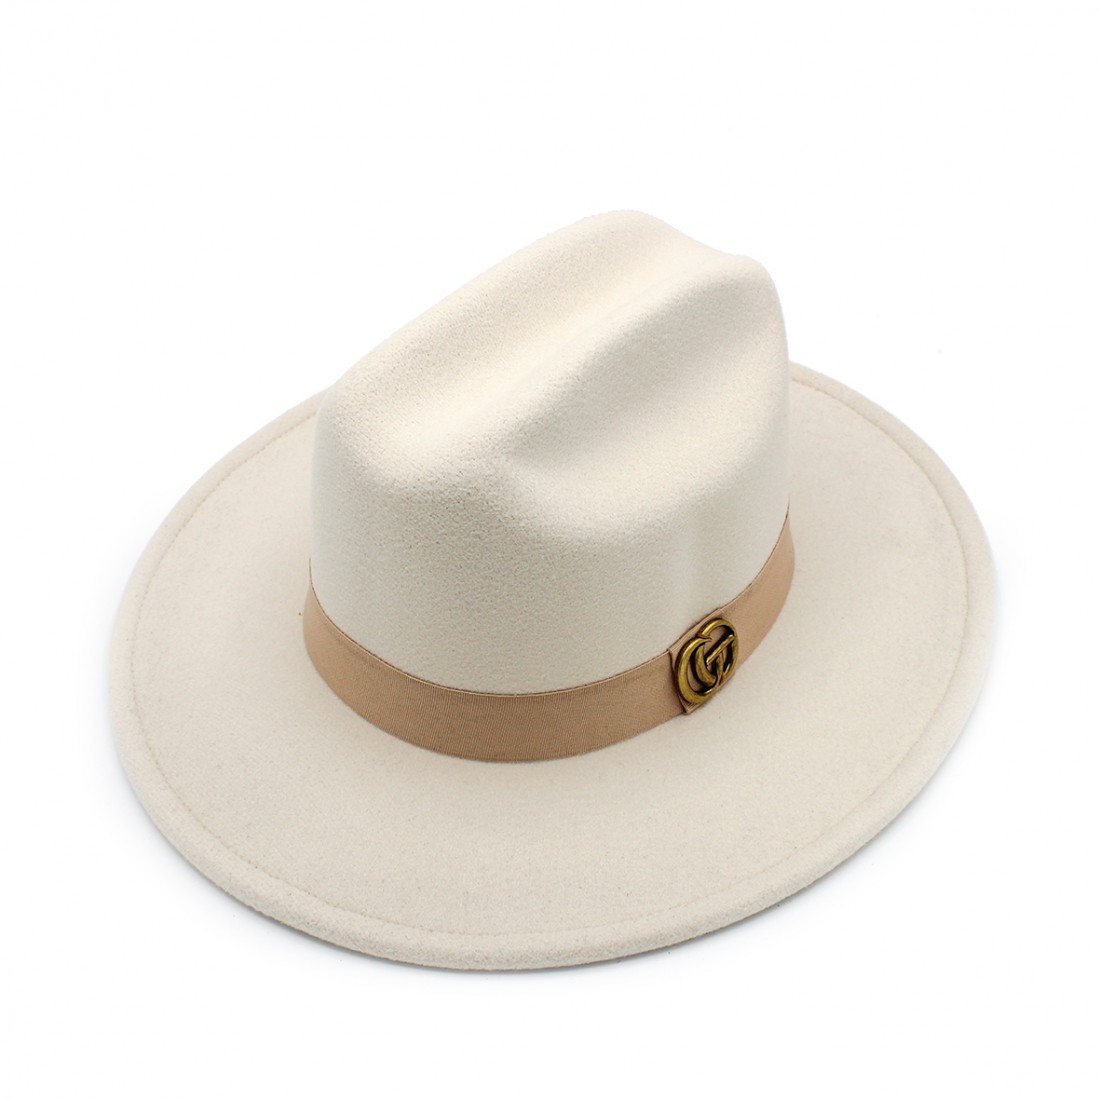 Sombrero de mujer elegante de fieltro en color beige y